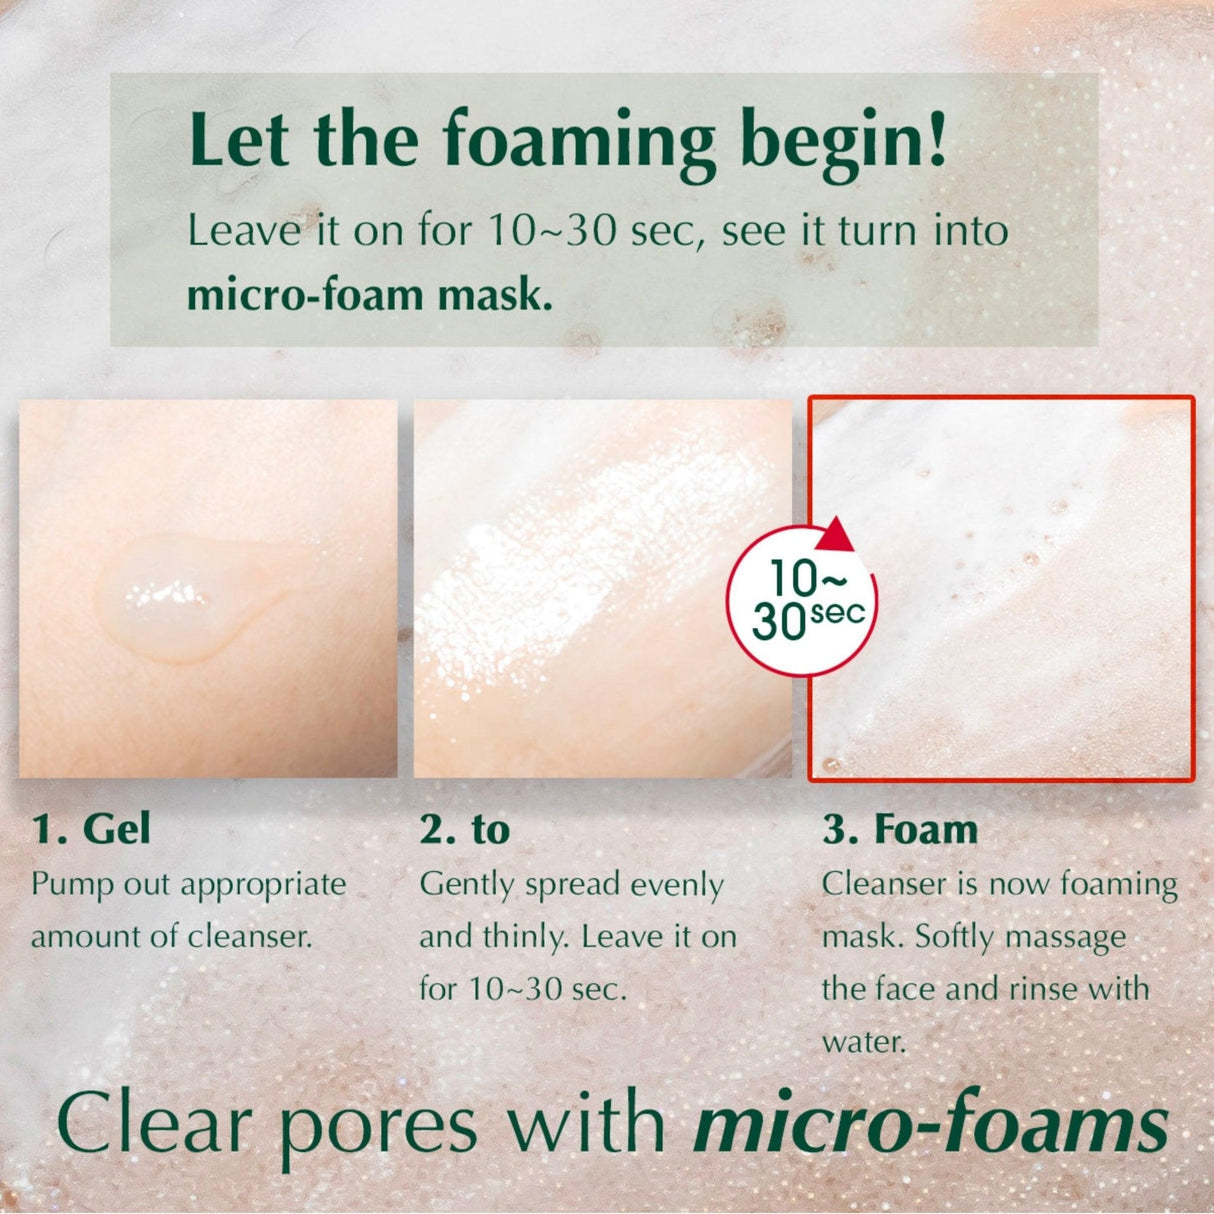 AHA-BHA-LHA Micro-Foaming Pore Cleanser - Filler Lux™ - SKIN CARE - Nexus Pharma